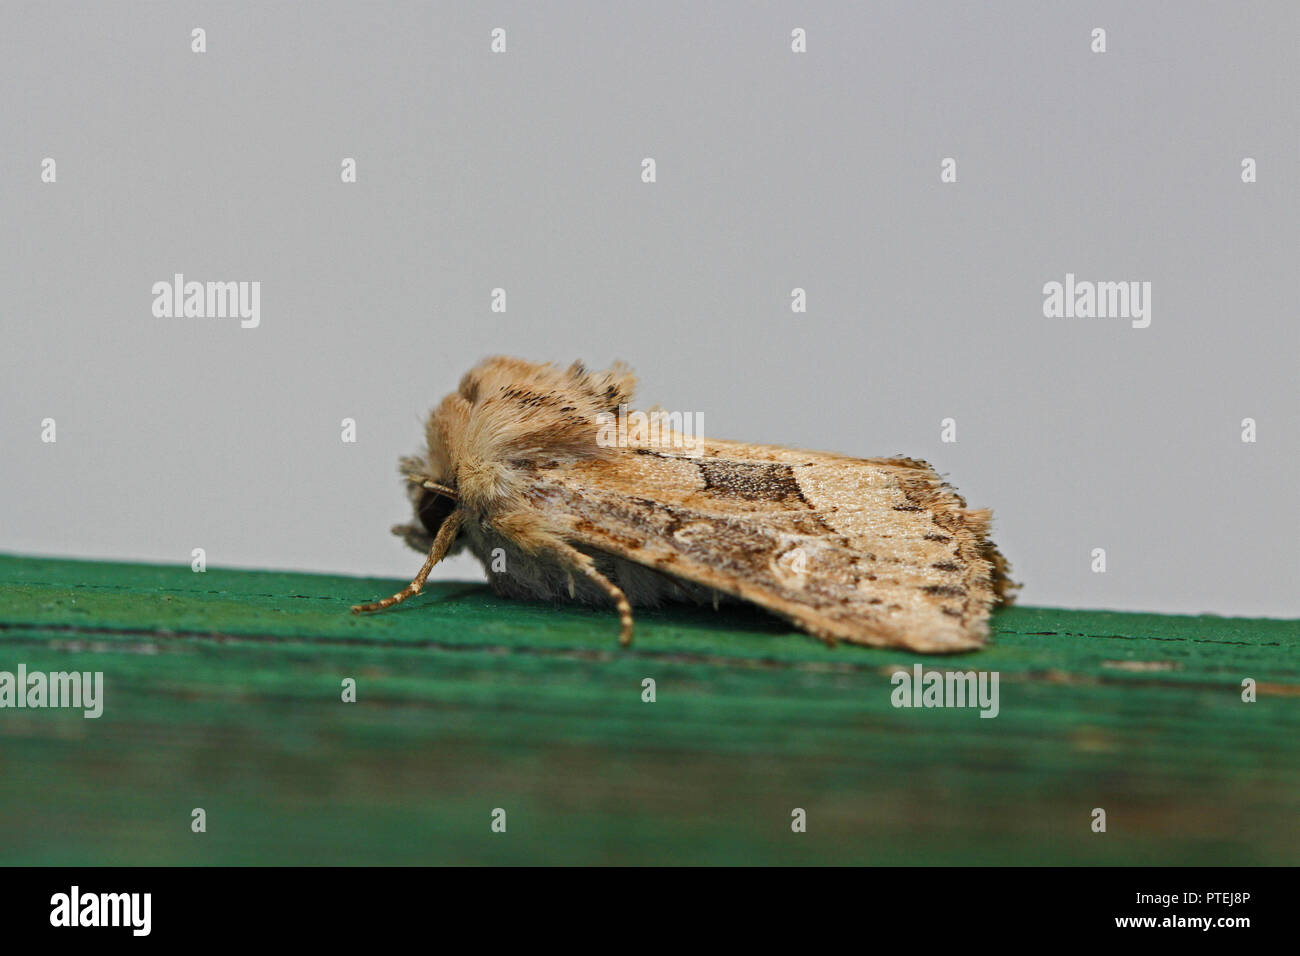 dunbar or olive moth Latin cosmia trapezina or ipimorpha subtusa family noctuidae catocalinae or erebidae resting on wooden beam in Italy Stock Photo